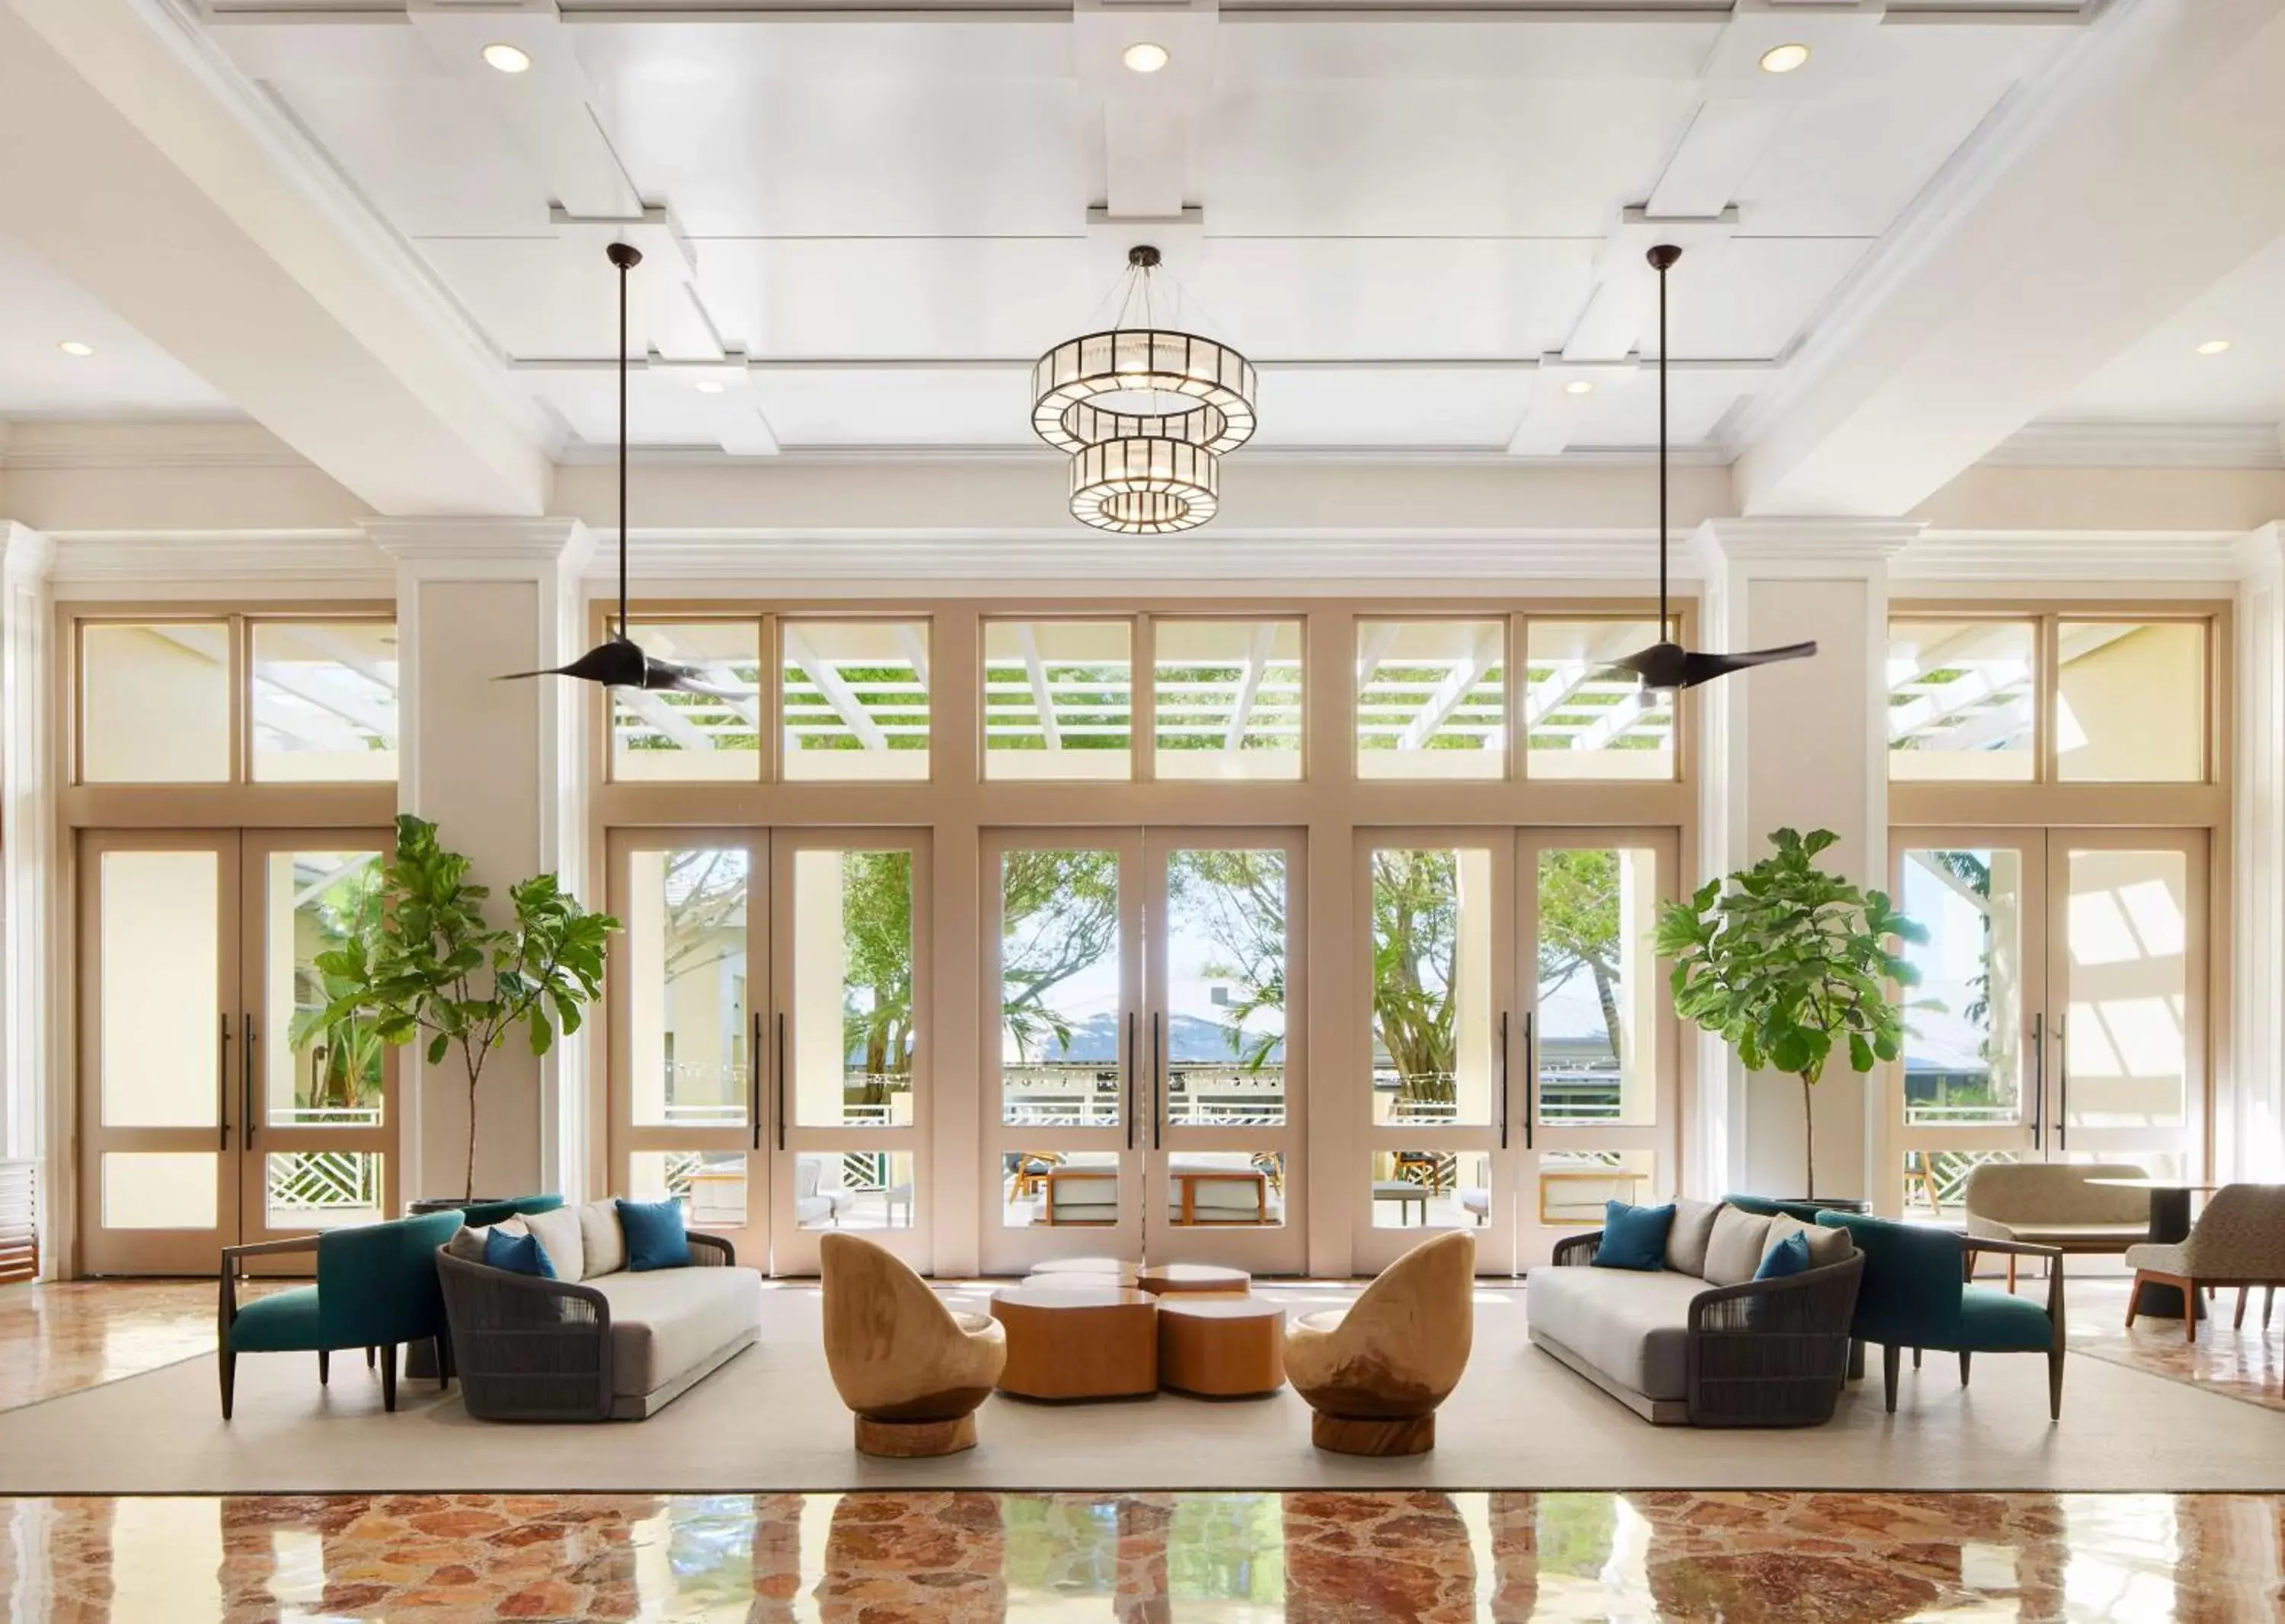 Lobby or reception, Lobby/Reception in Hyatt Regency Coconut Point Resort & Spa Near Naples